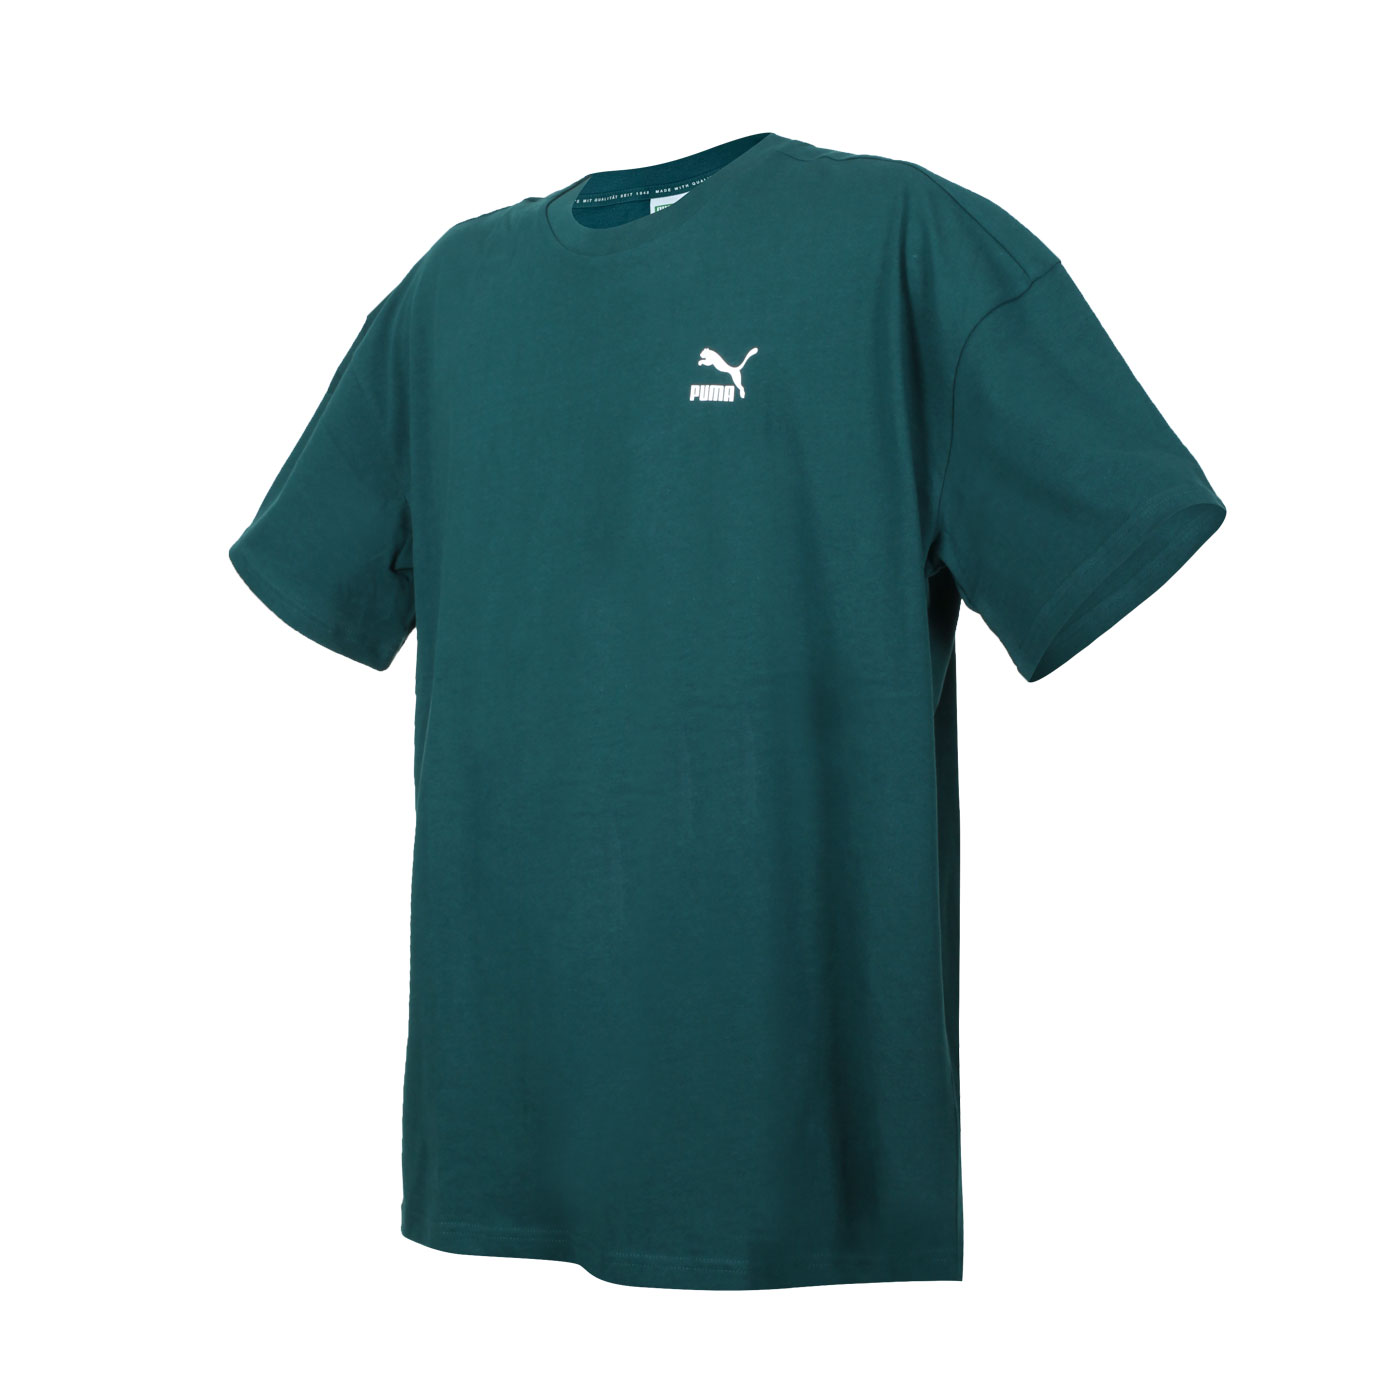 PUMA 男款流行系列Classics寬鬆短袖T恤 53623624 - 綠白